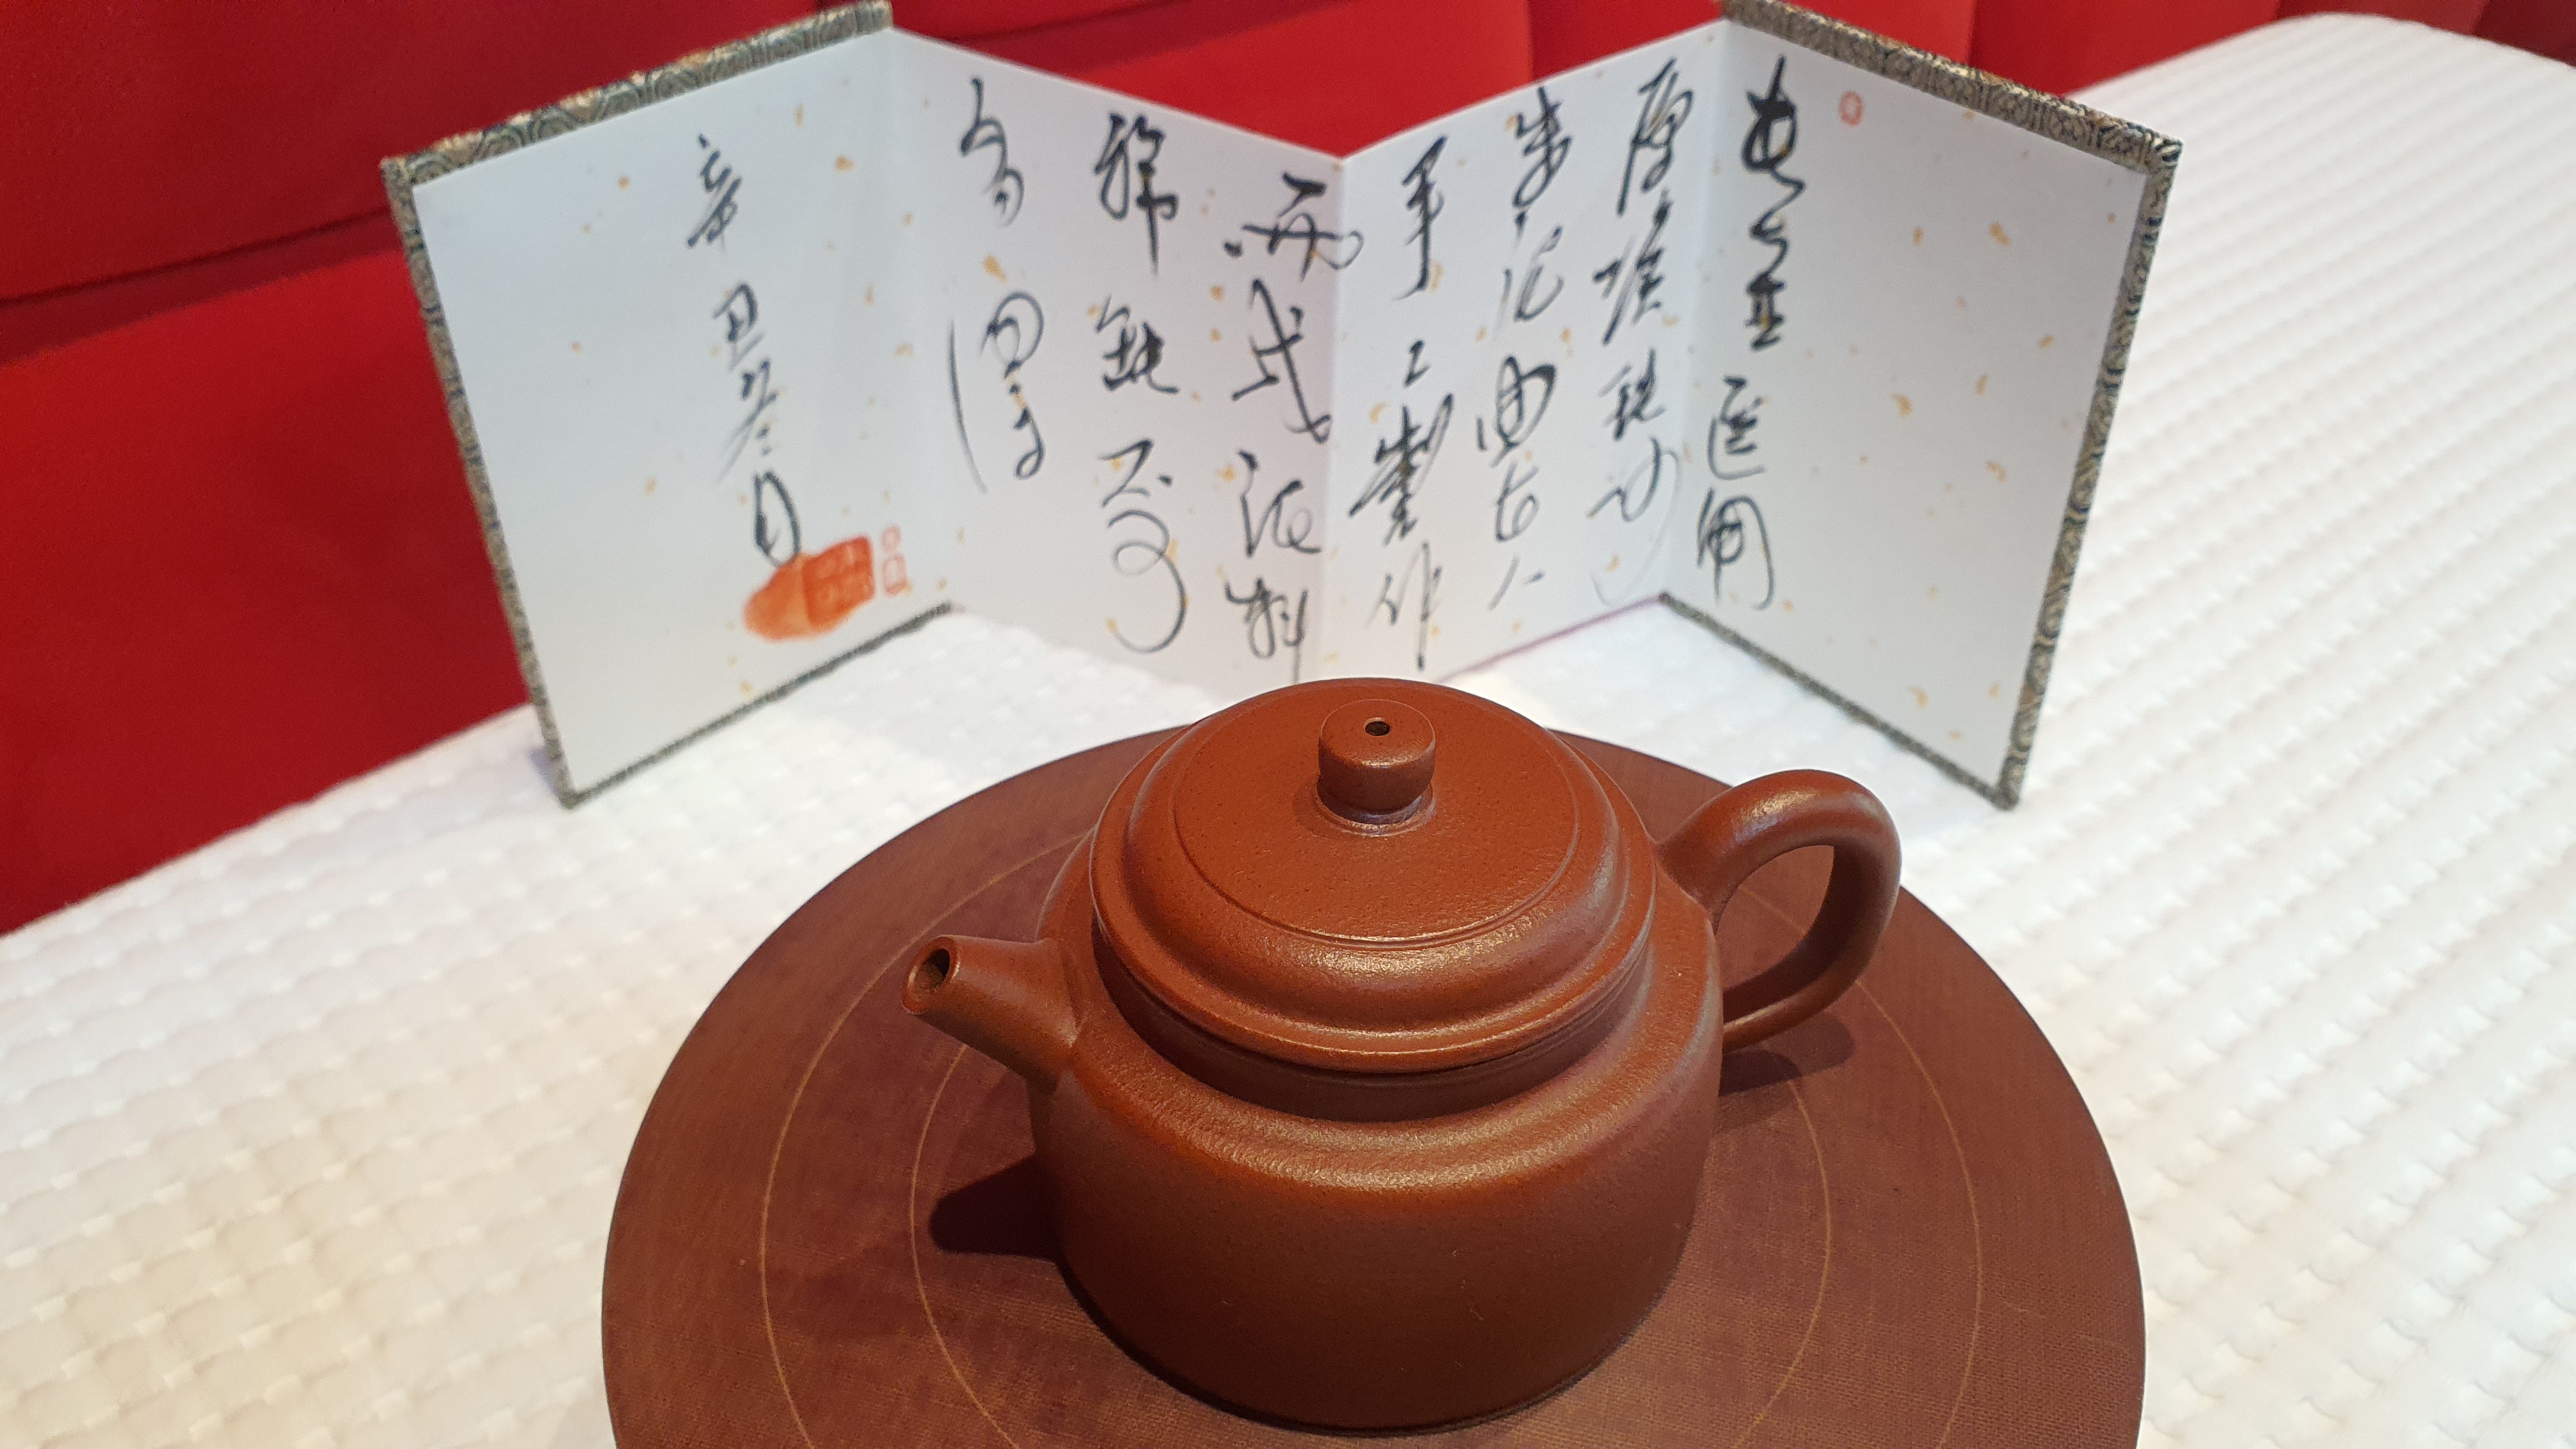 De Zhong 德钟, TieSha ZhuNi 铁砂朱泥, 150ml, made by renowned family for TieSha ZhuNi, Artisan ZHU JIE 朱杰。